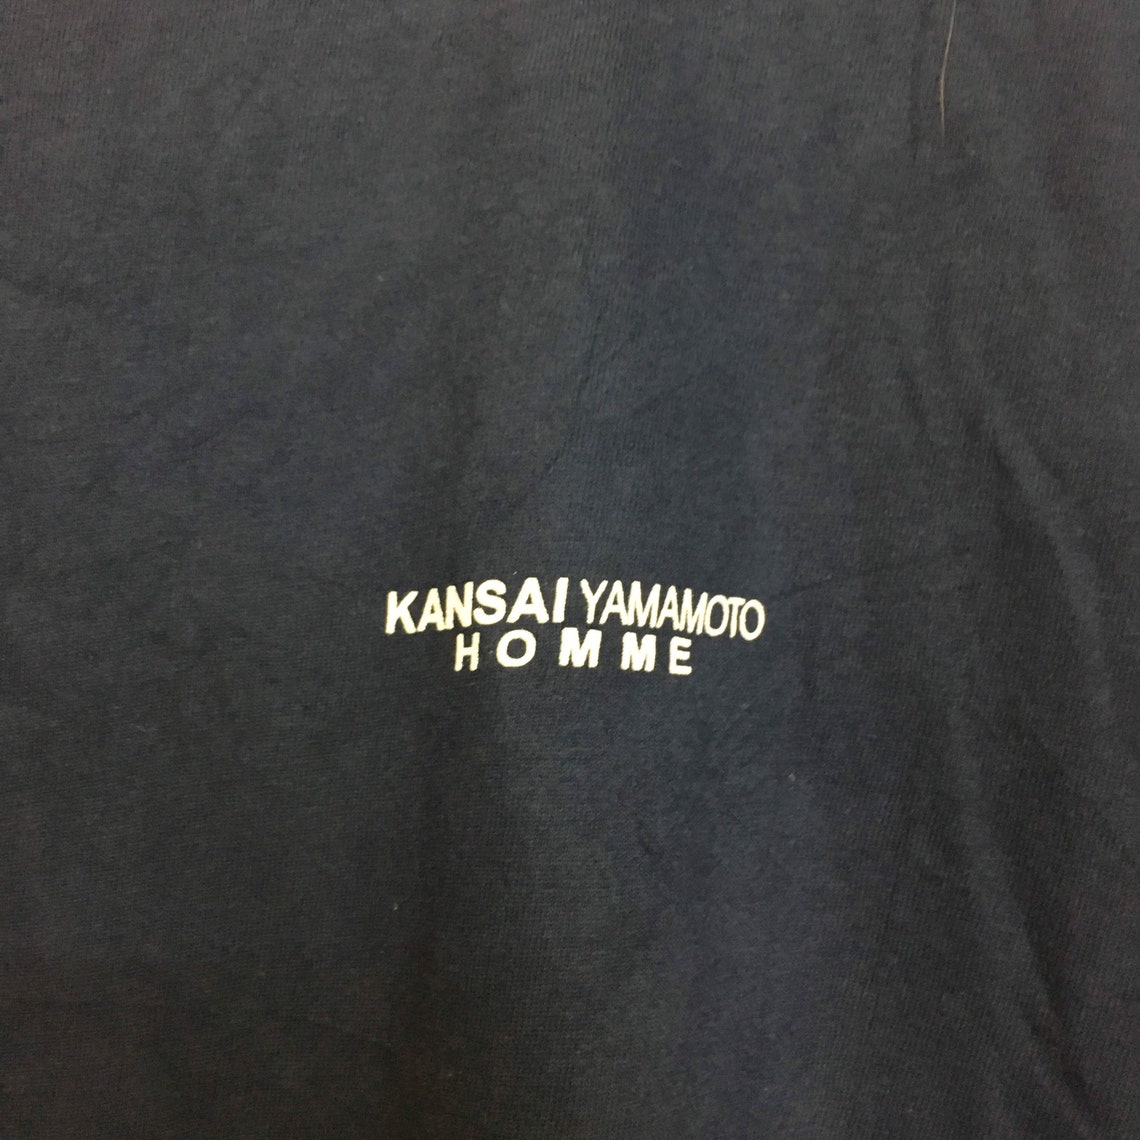 Vtg Kansai Yamamoto Homme Signature T-shirt Size M - Etsy